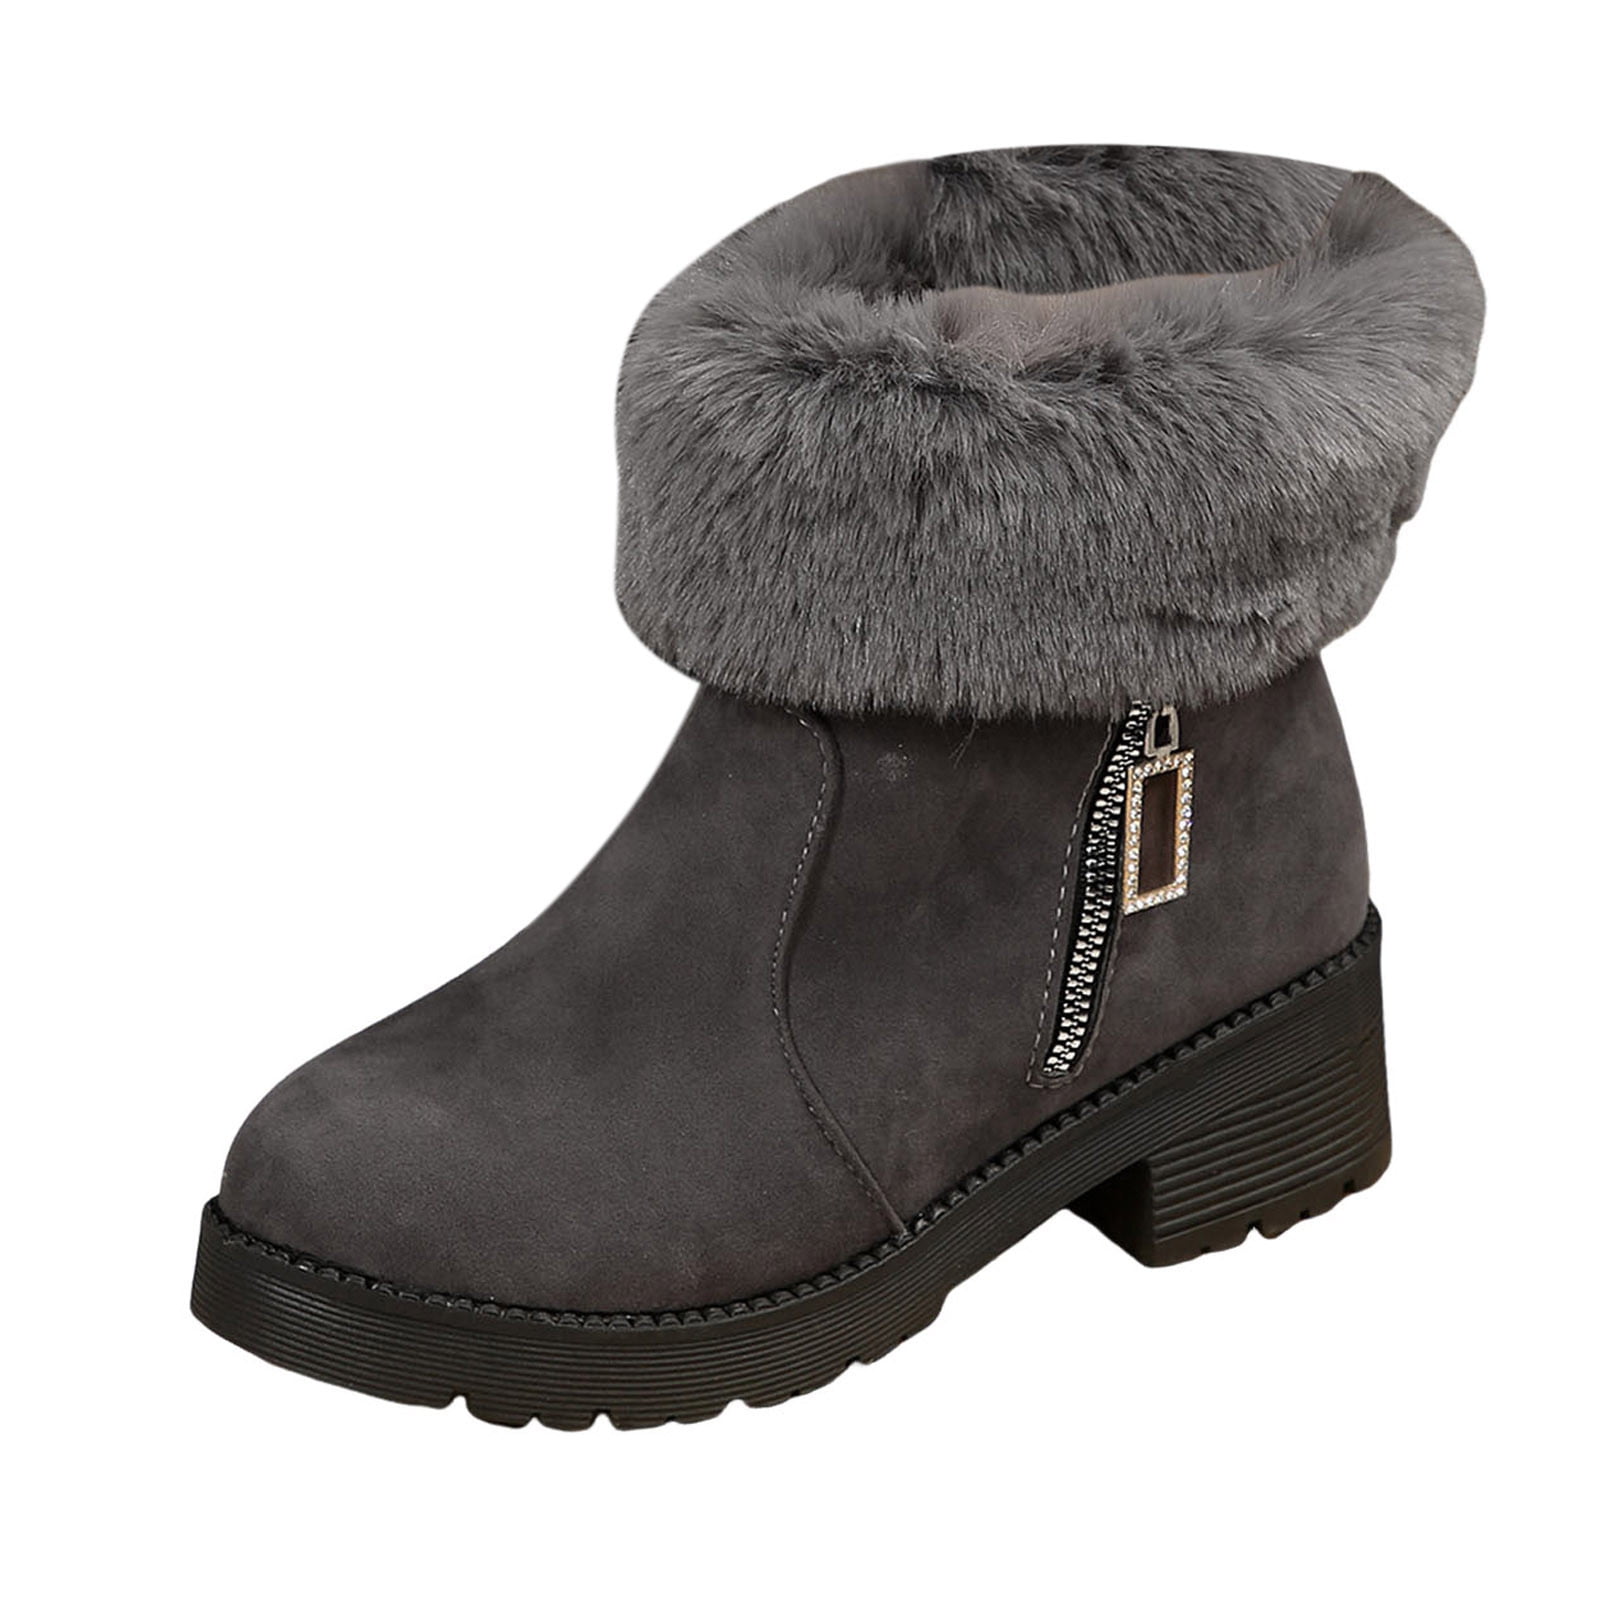 PMUYBHF Black Cowboy Boots Ladies Fashion Winter Solid Color Plush ...